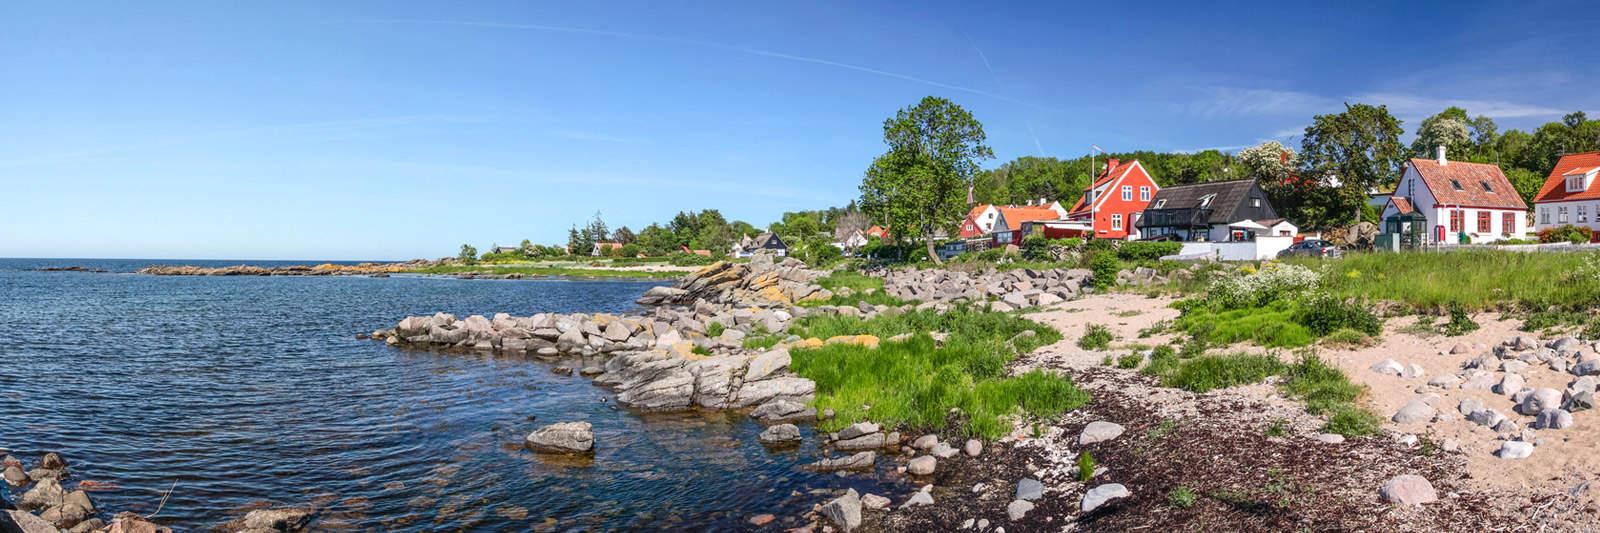 80 Ferienwohnungen und Ferienhäuser in Farsø - tourist-online.de